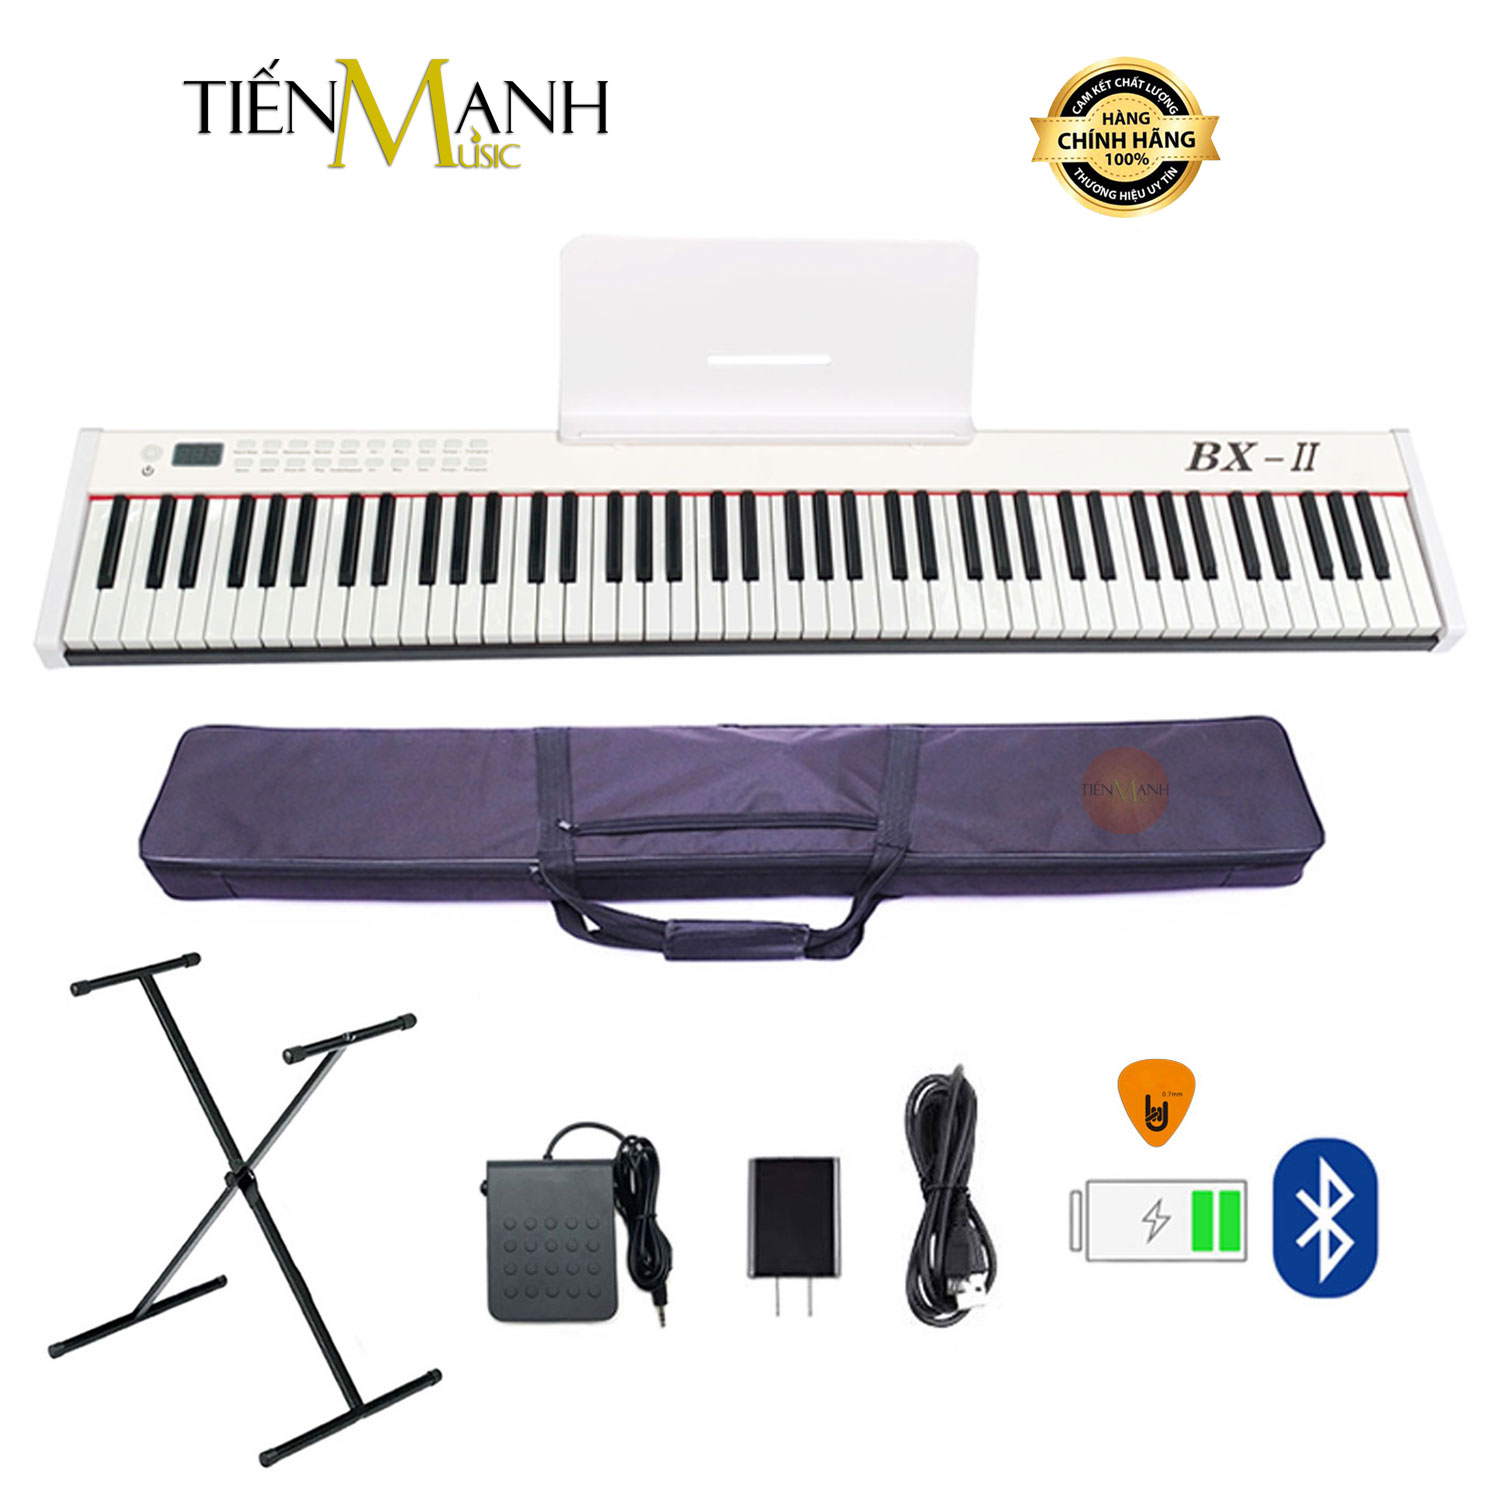 [Màu Trắng] Bộ Đàn Piano Điện Bora BX-II - Đàn, Chân, Bao, Nguồn - 88 Phím nặng Cảm ứng lực BX-02 Midi Keyboard Controllers BX2 Hàng Chính Hãng - Kèm Móng Gẩy DreamMaker